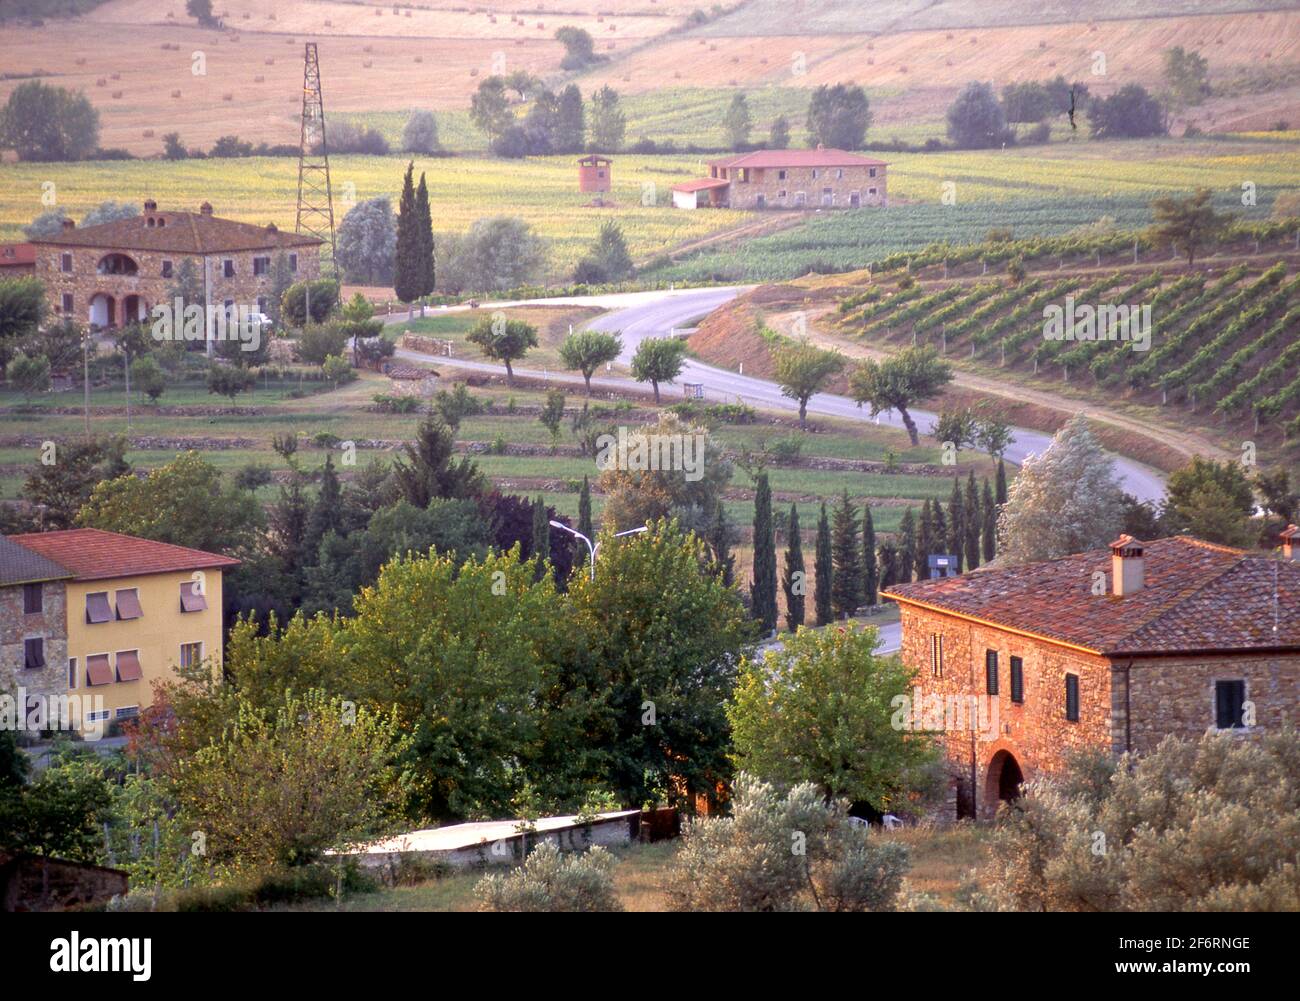 Landhäuser und Felder in landschaftlich reizvoller Landschaft im Valdarno in der Toskana, Italien Stockfoto